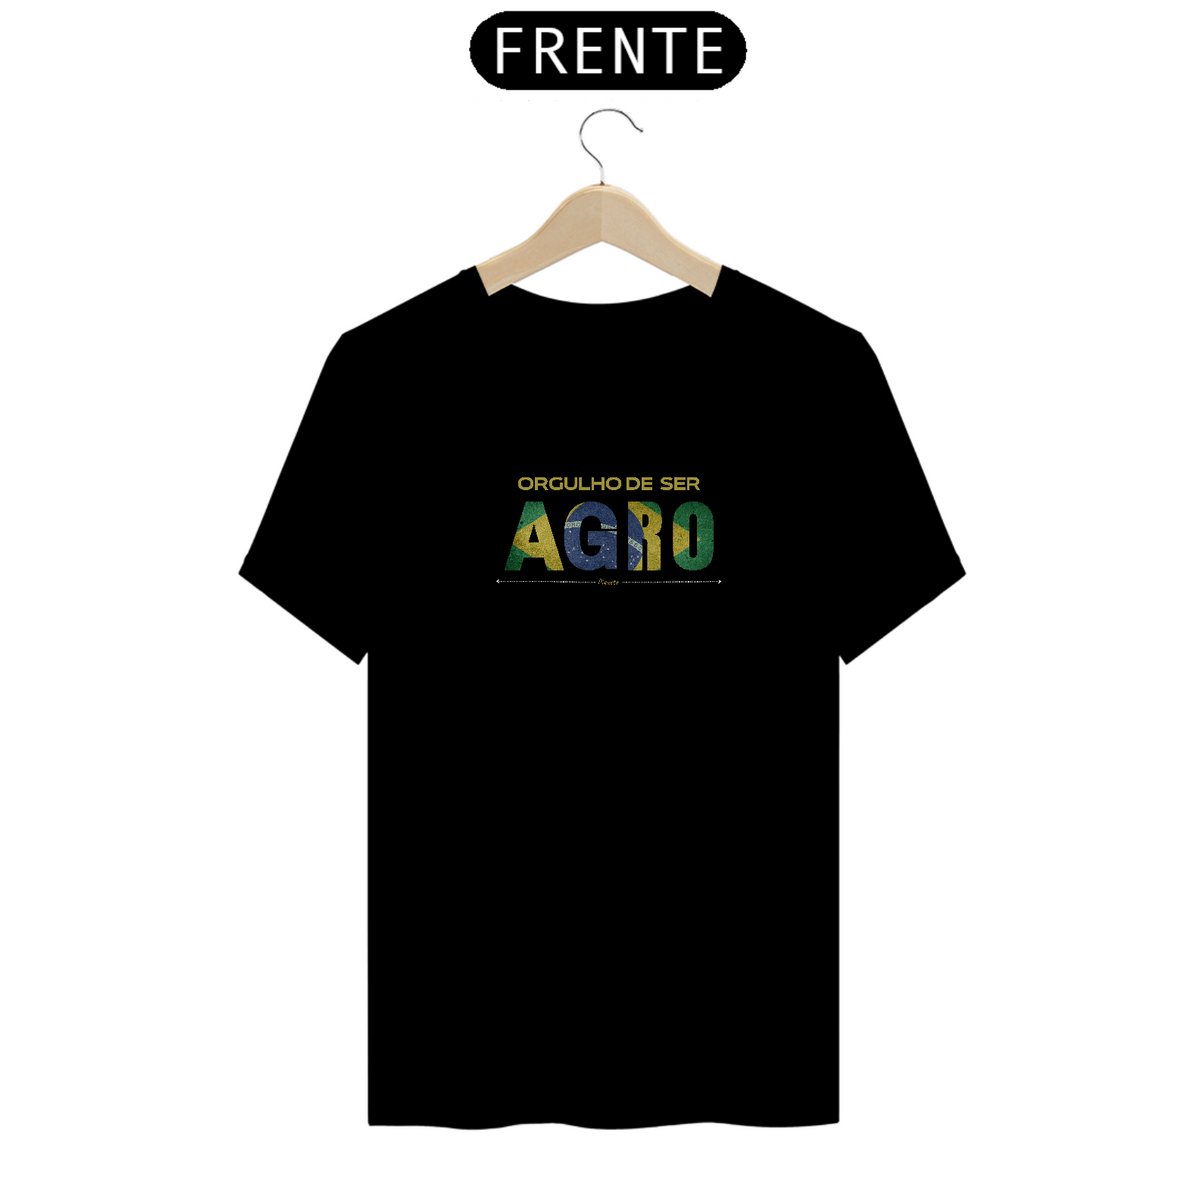 Nome do produto: Camiseta Orgulho de ser Agro - Unissex